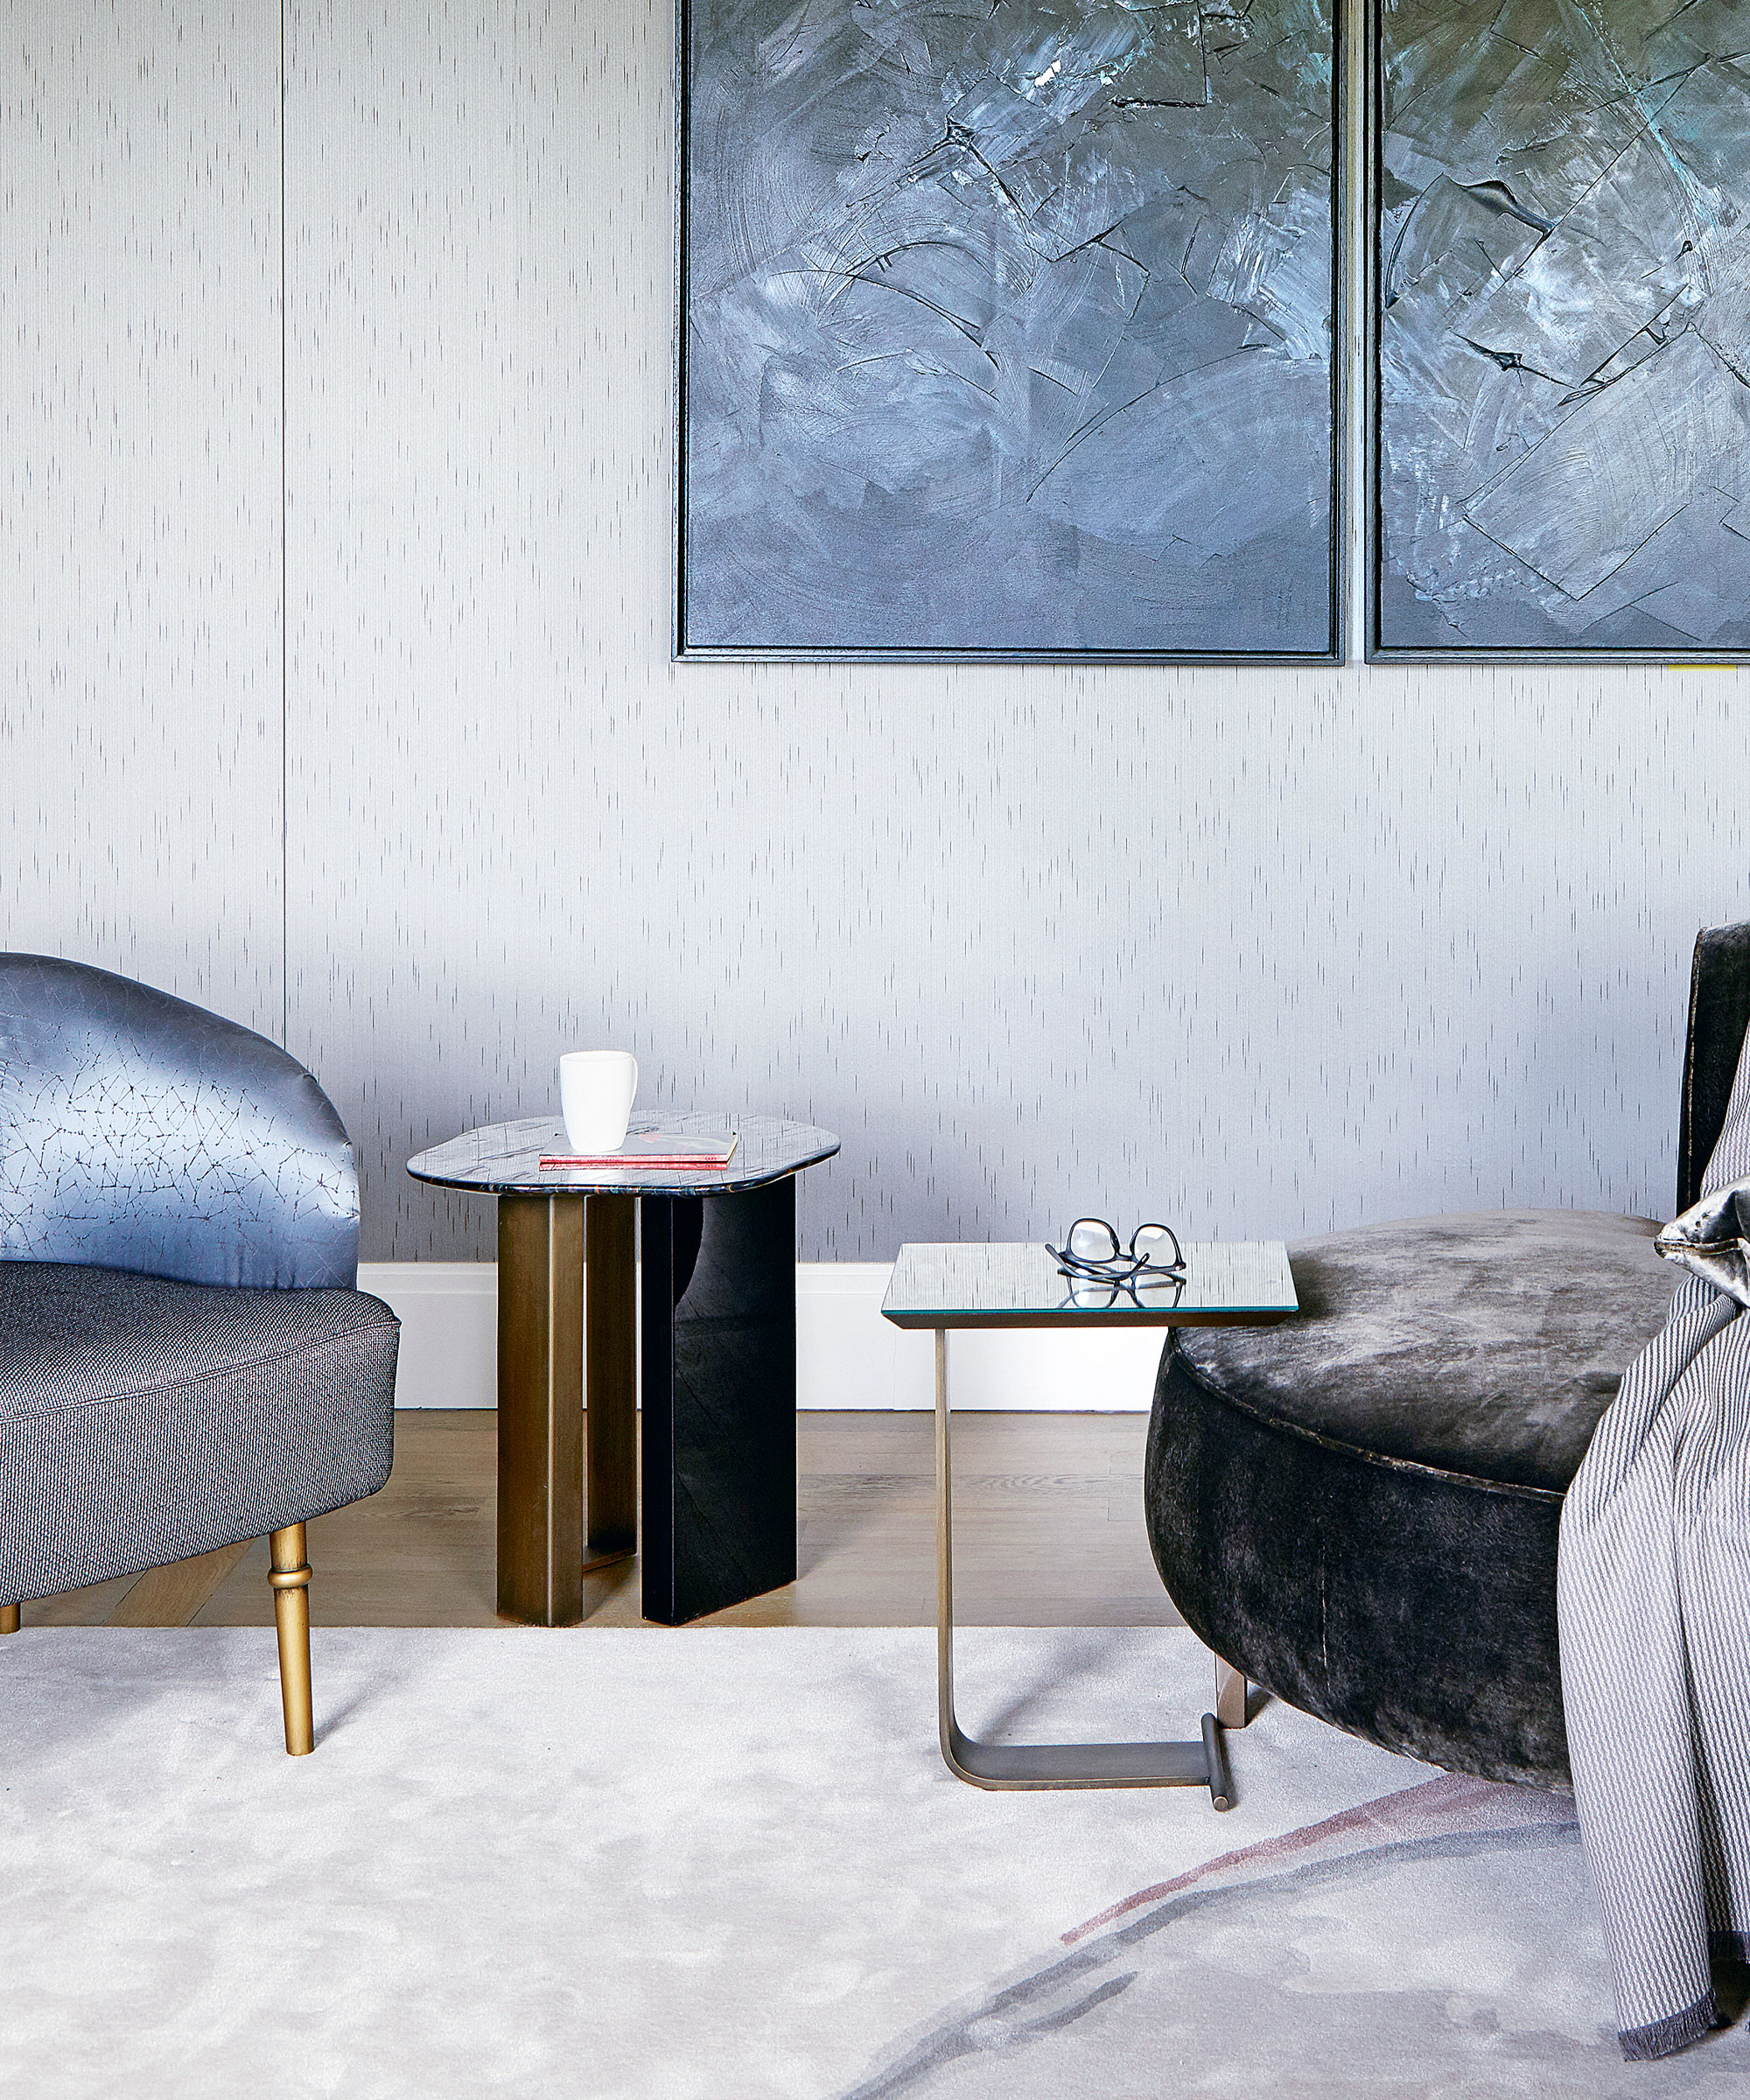 Sala de estar moderna con dos elegantes mesas auxiliares, grandes obras de arte en la pared y un sillón de terciopelo azul